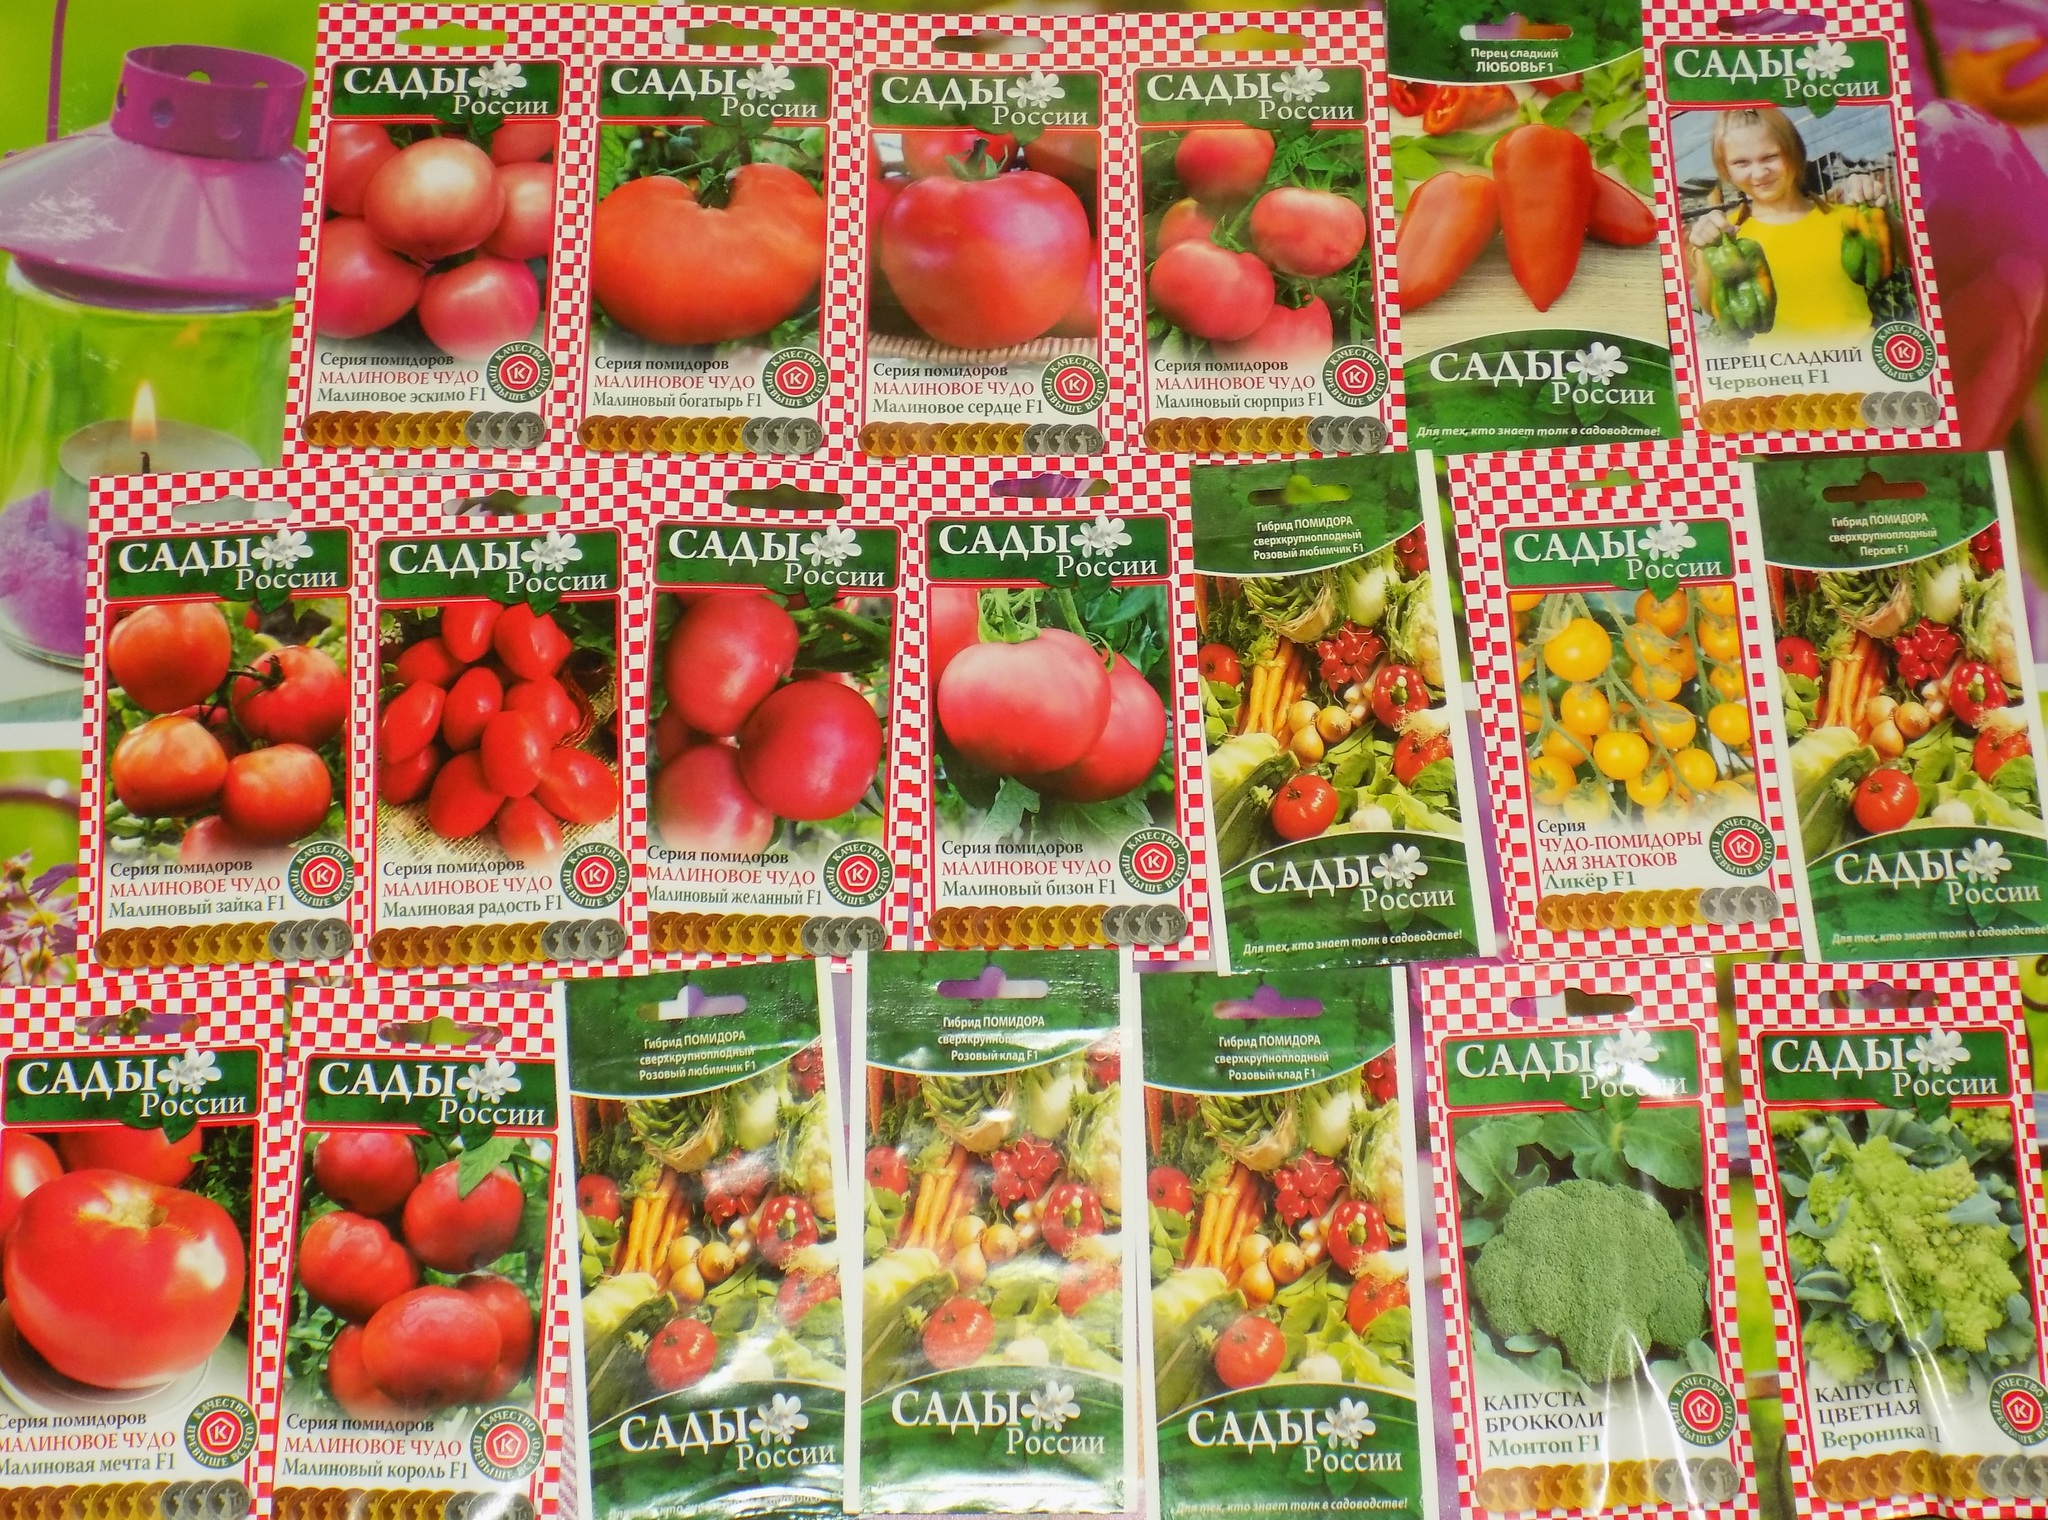 Сады россии заказать семена купить ахименесы в екатеринбурге